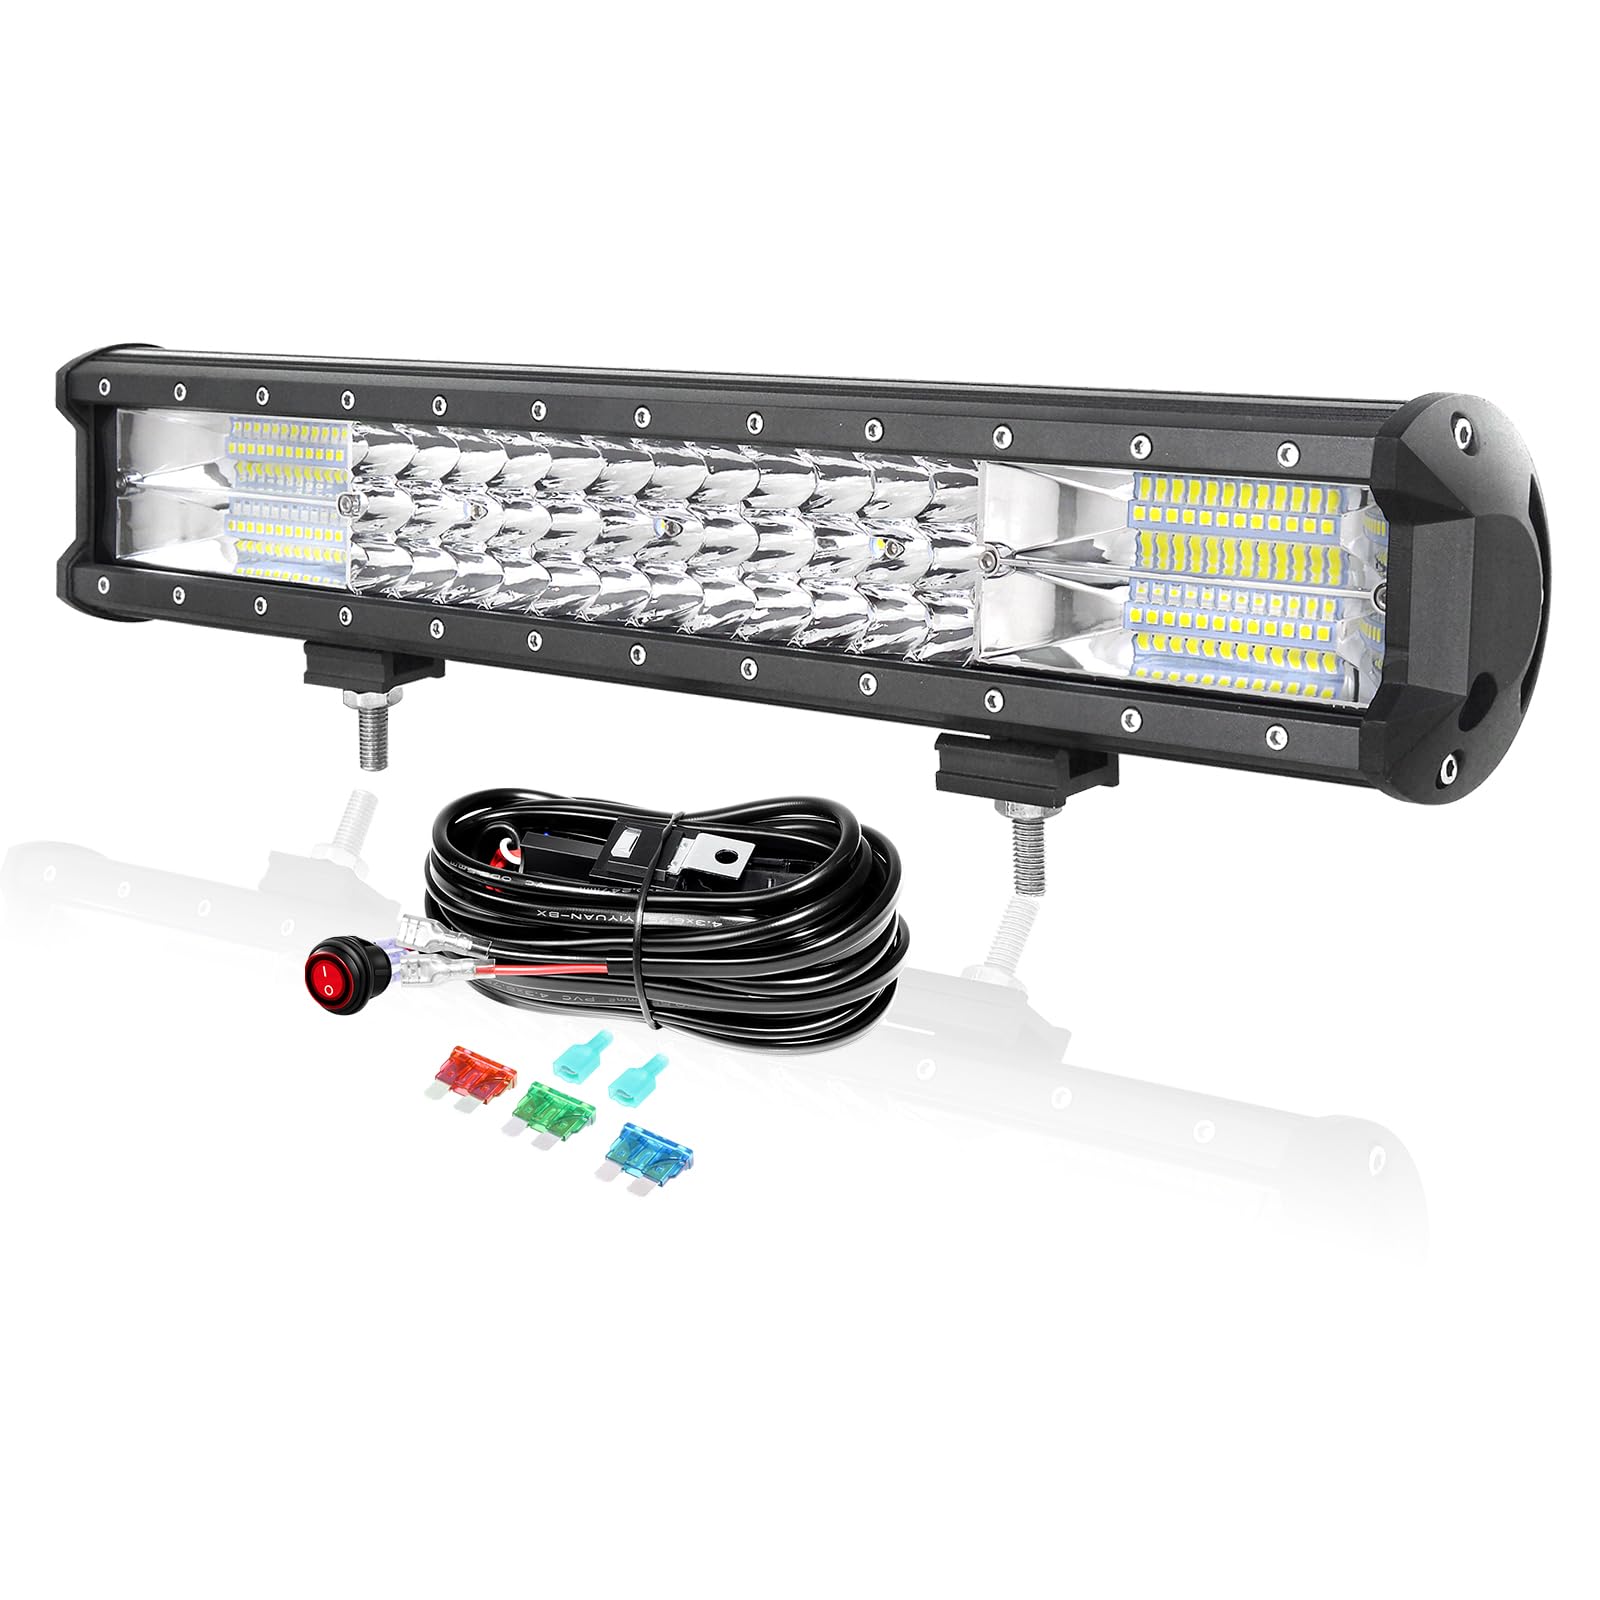 PICAA 18 Zoll 252W LED Lightbar mit Kabelbaum Kit, Tri-Reihen LED Arbeitsscheinwerfer Lichtbalken 12V 24V Auto Offroad 4x4 Zusatzscheinwerfer Flutlicht Spotlight von PICAA